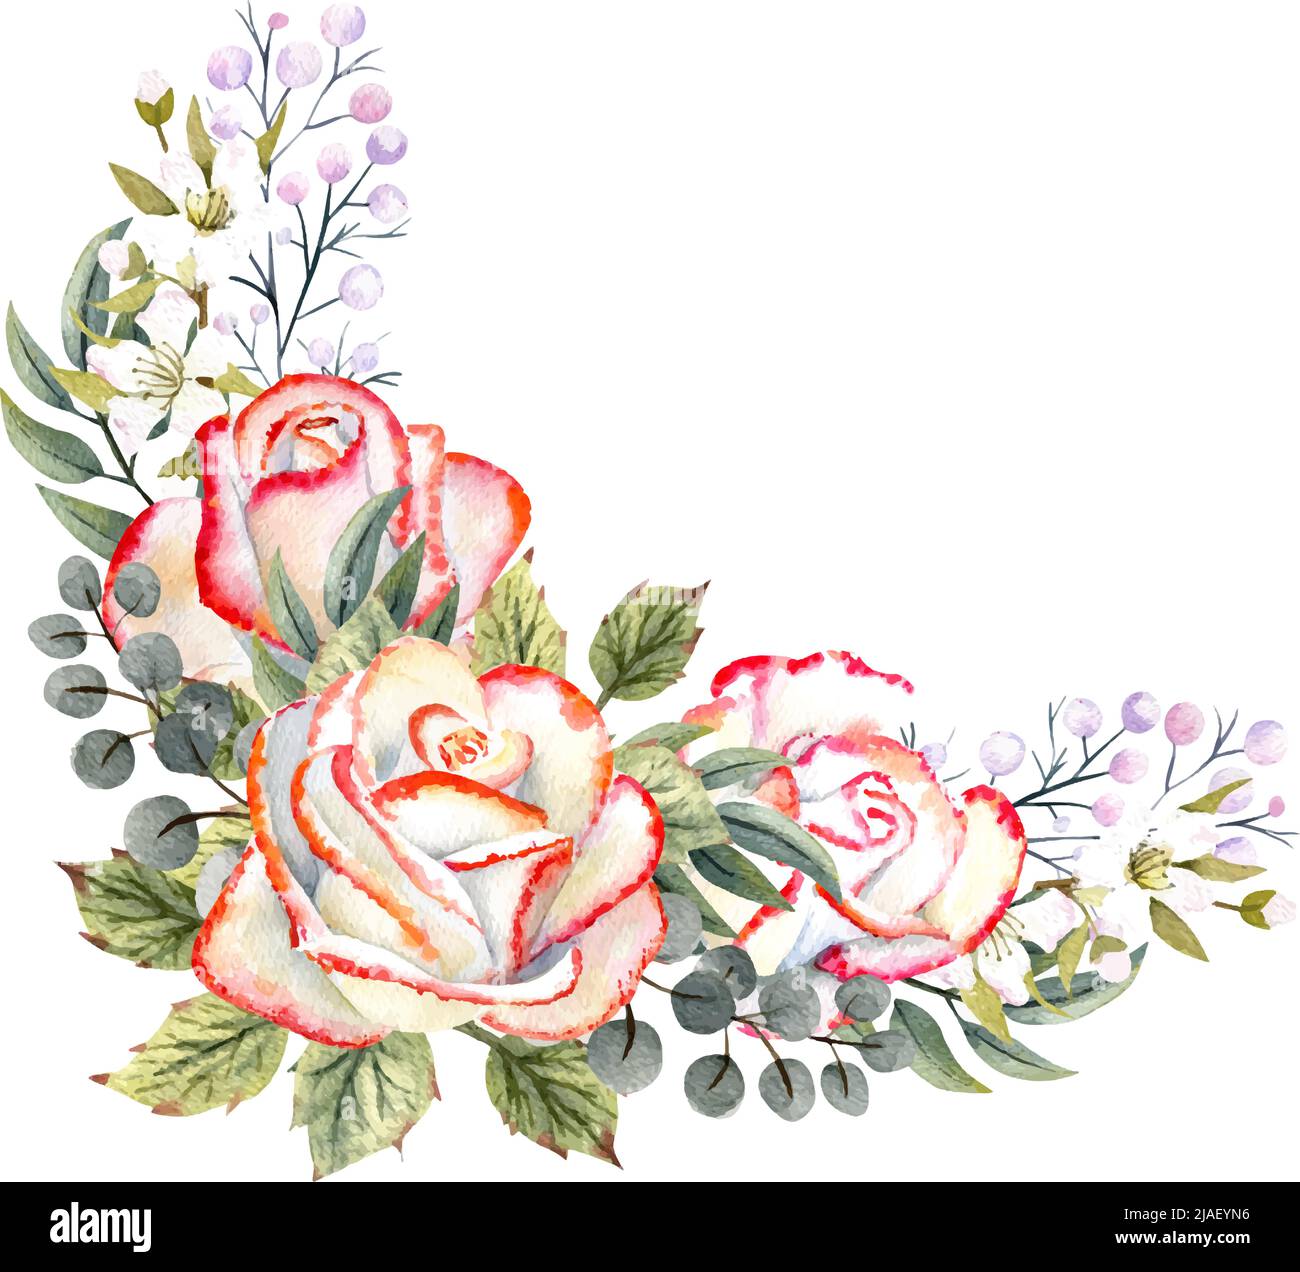 Bouquet d'aquarelle de roses blanches avec feuilles, brindilles décoratives  et baies. Illustration vectorielle des logos, invitations, cartes de vœux  Image Vectorielle Stock - Alamy